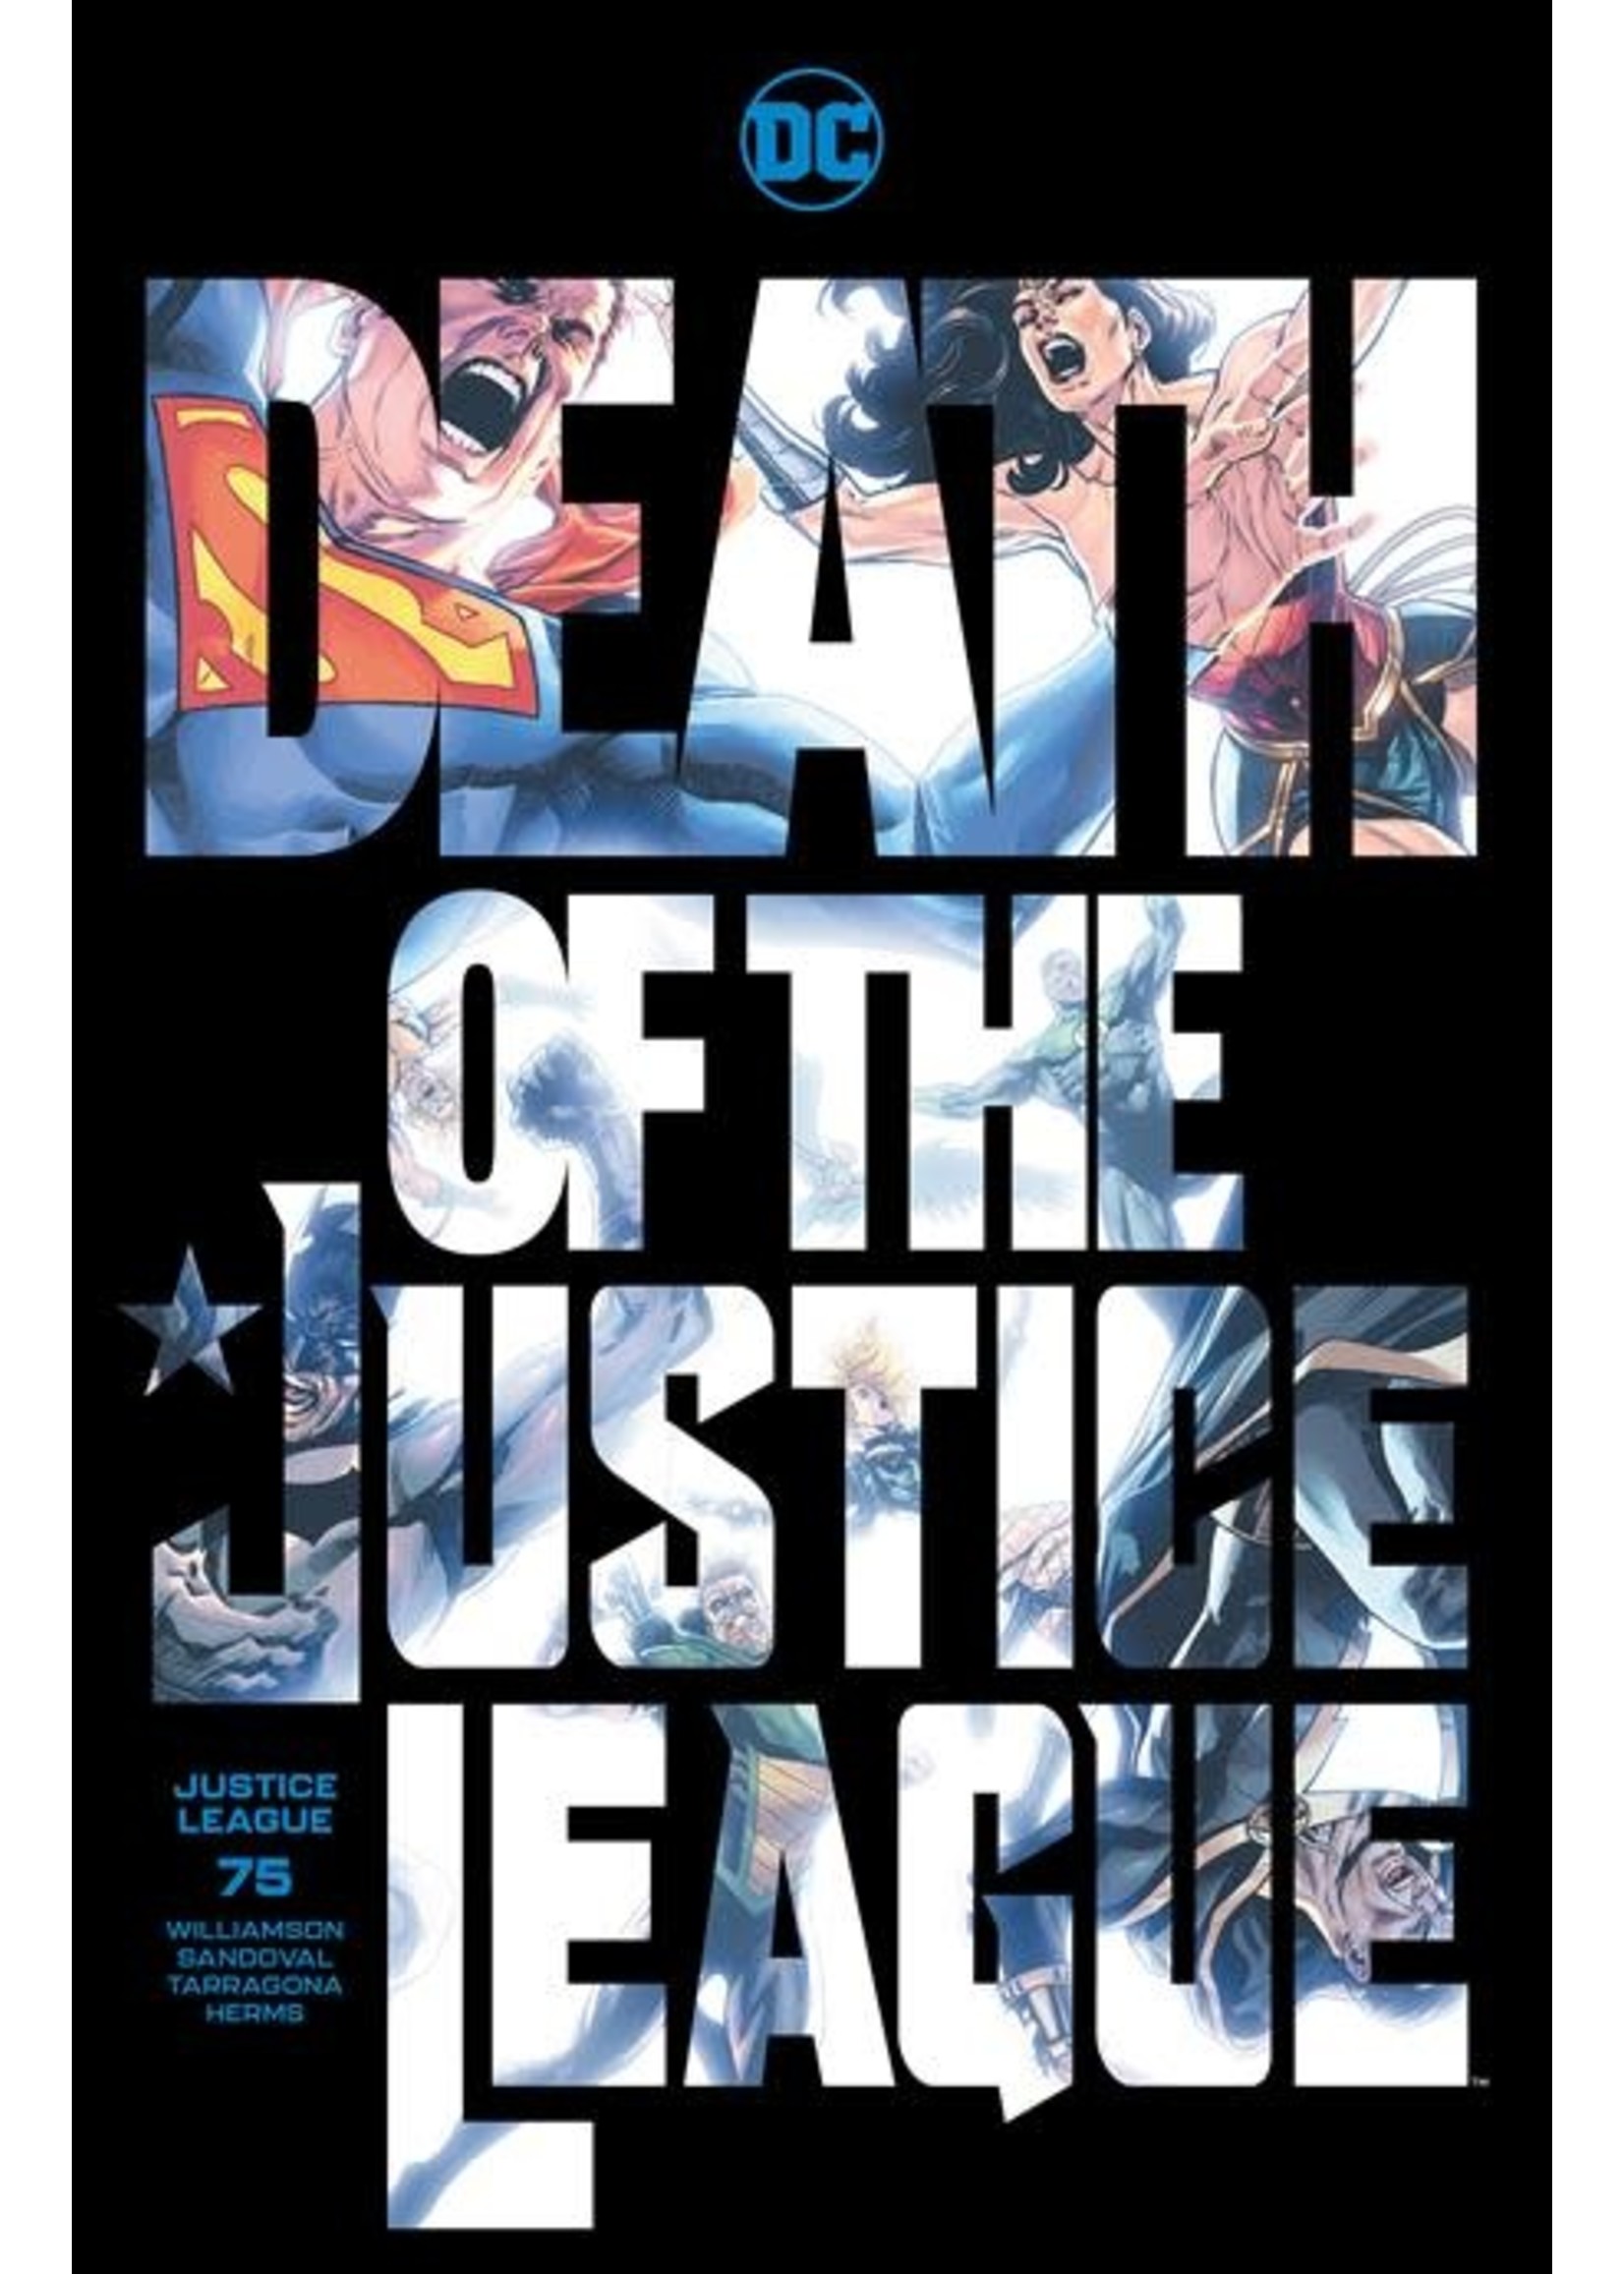 Justice League Justice League #75